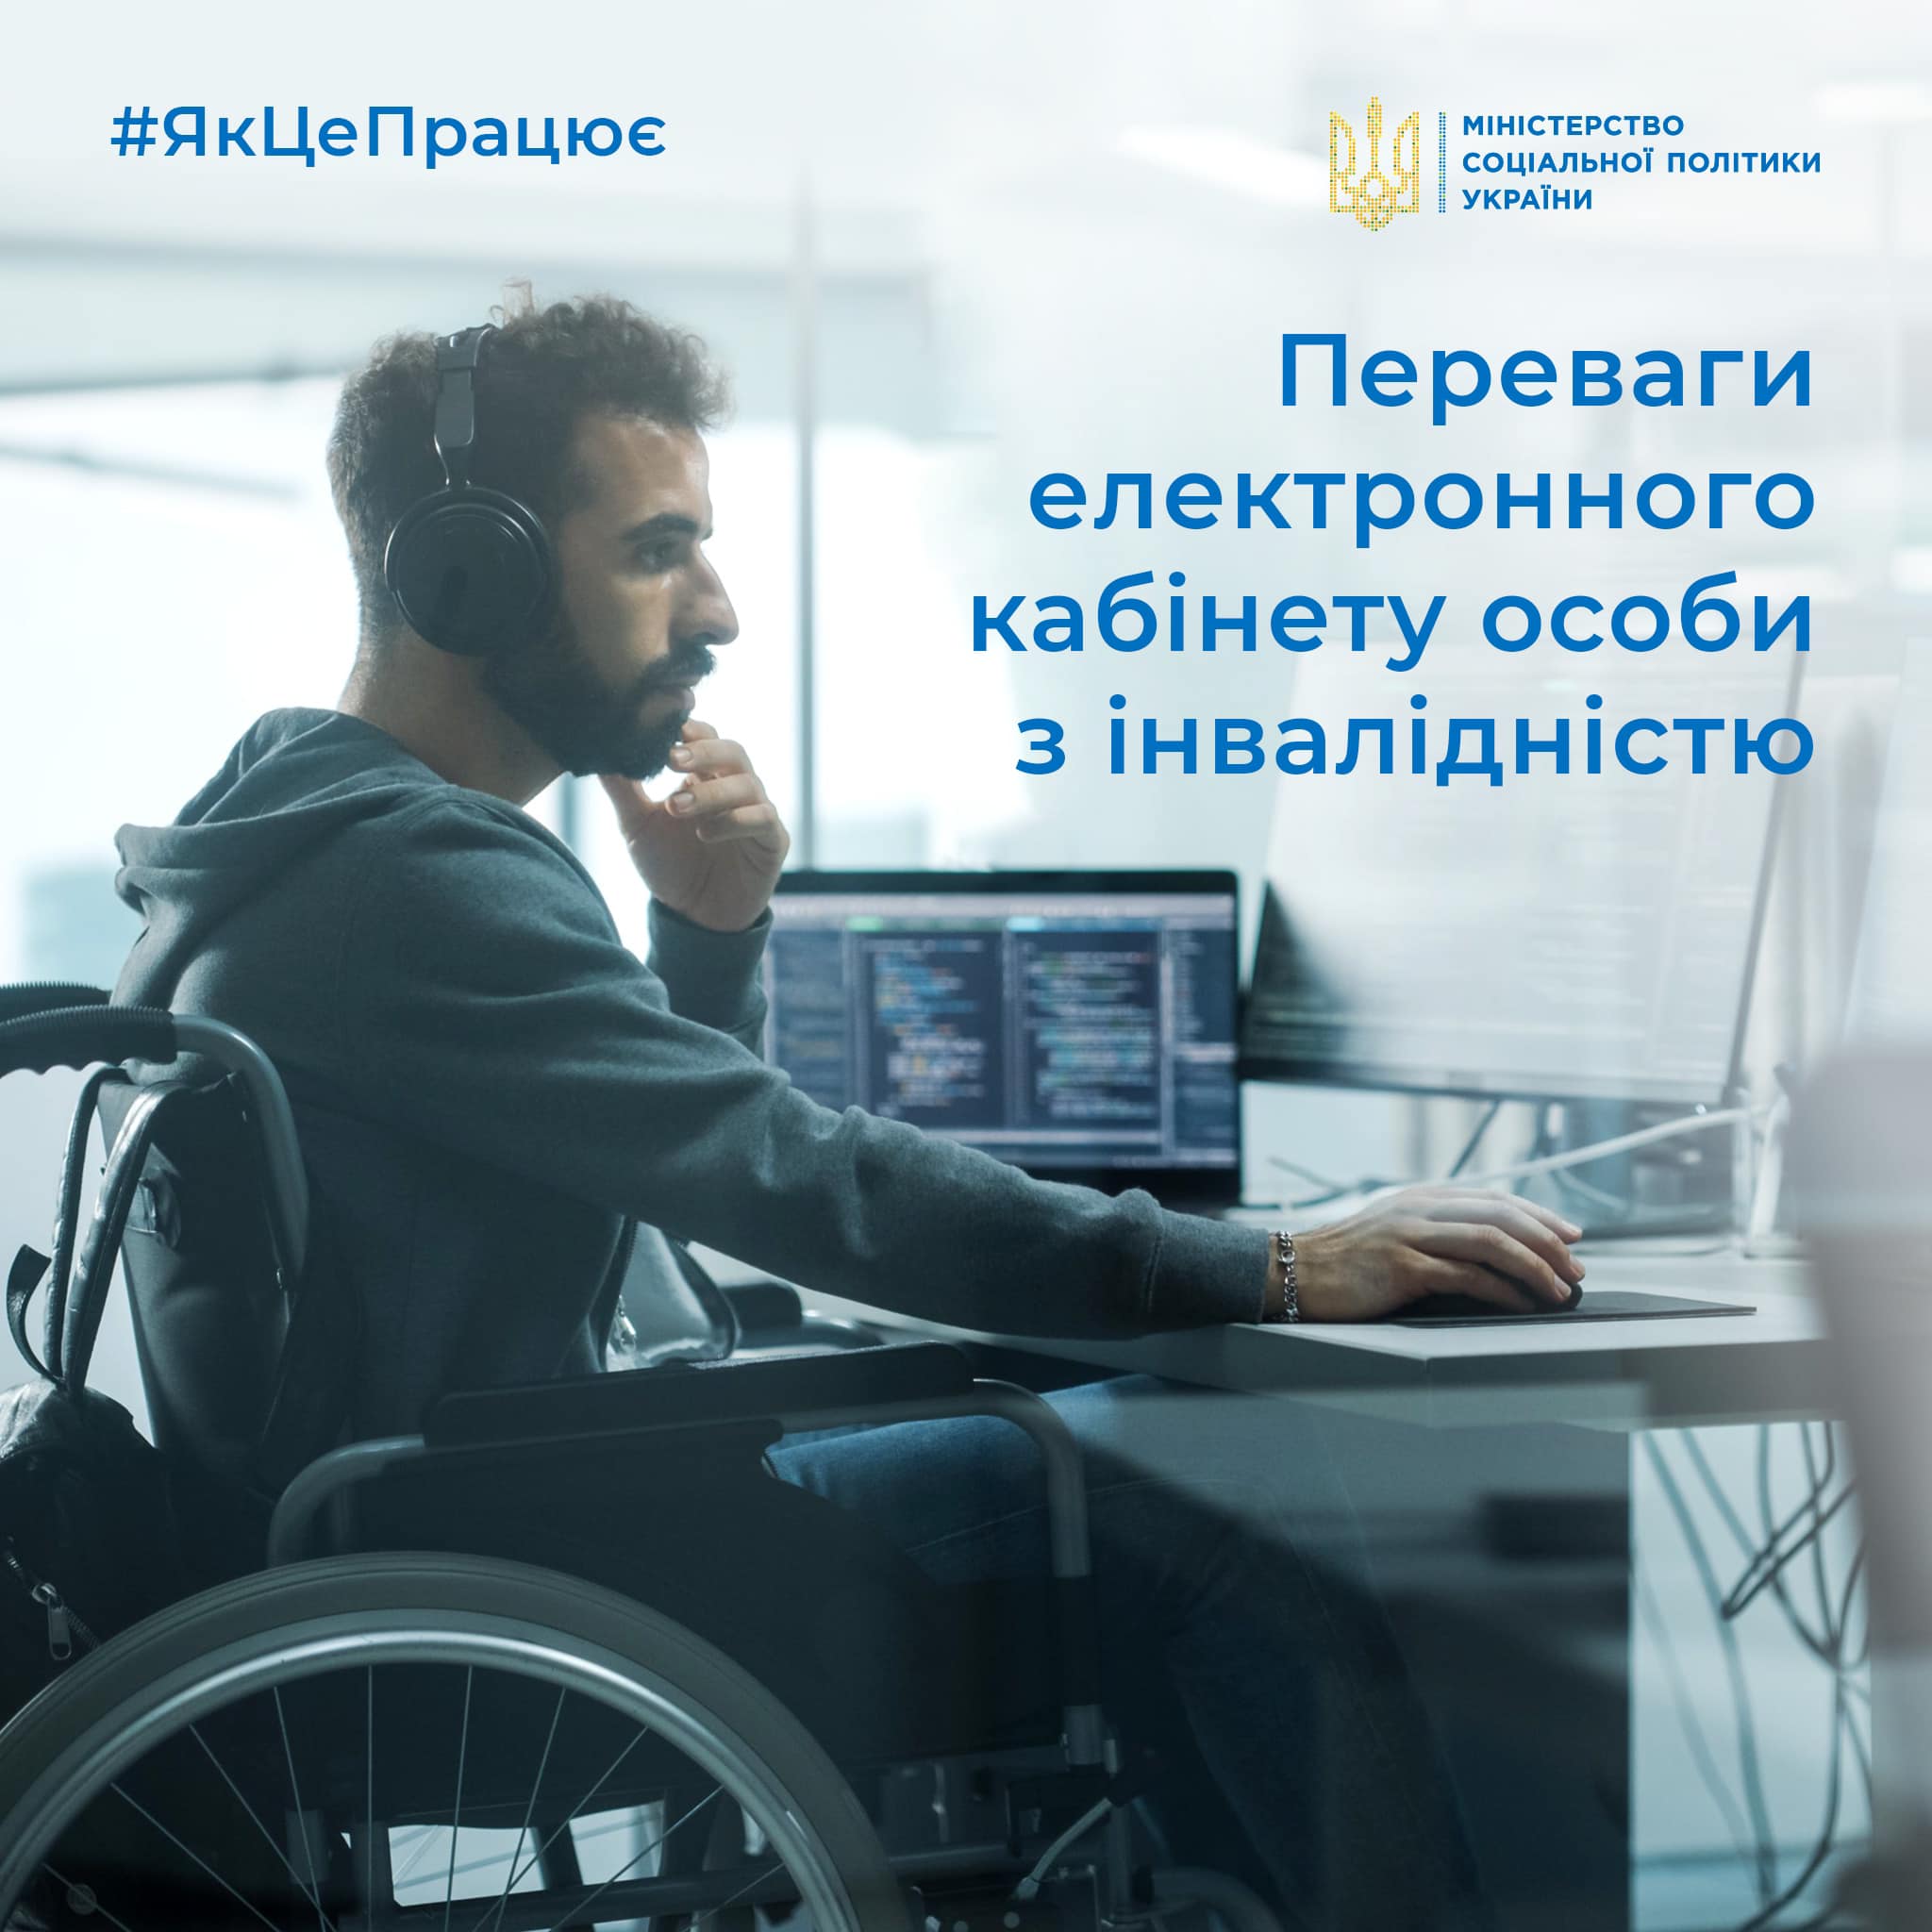 Електронний кабінет особи з інвалідністю – зручний сервіс, який допоможе оперативно отримати допоміжні засоби реабілітації